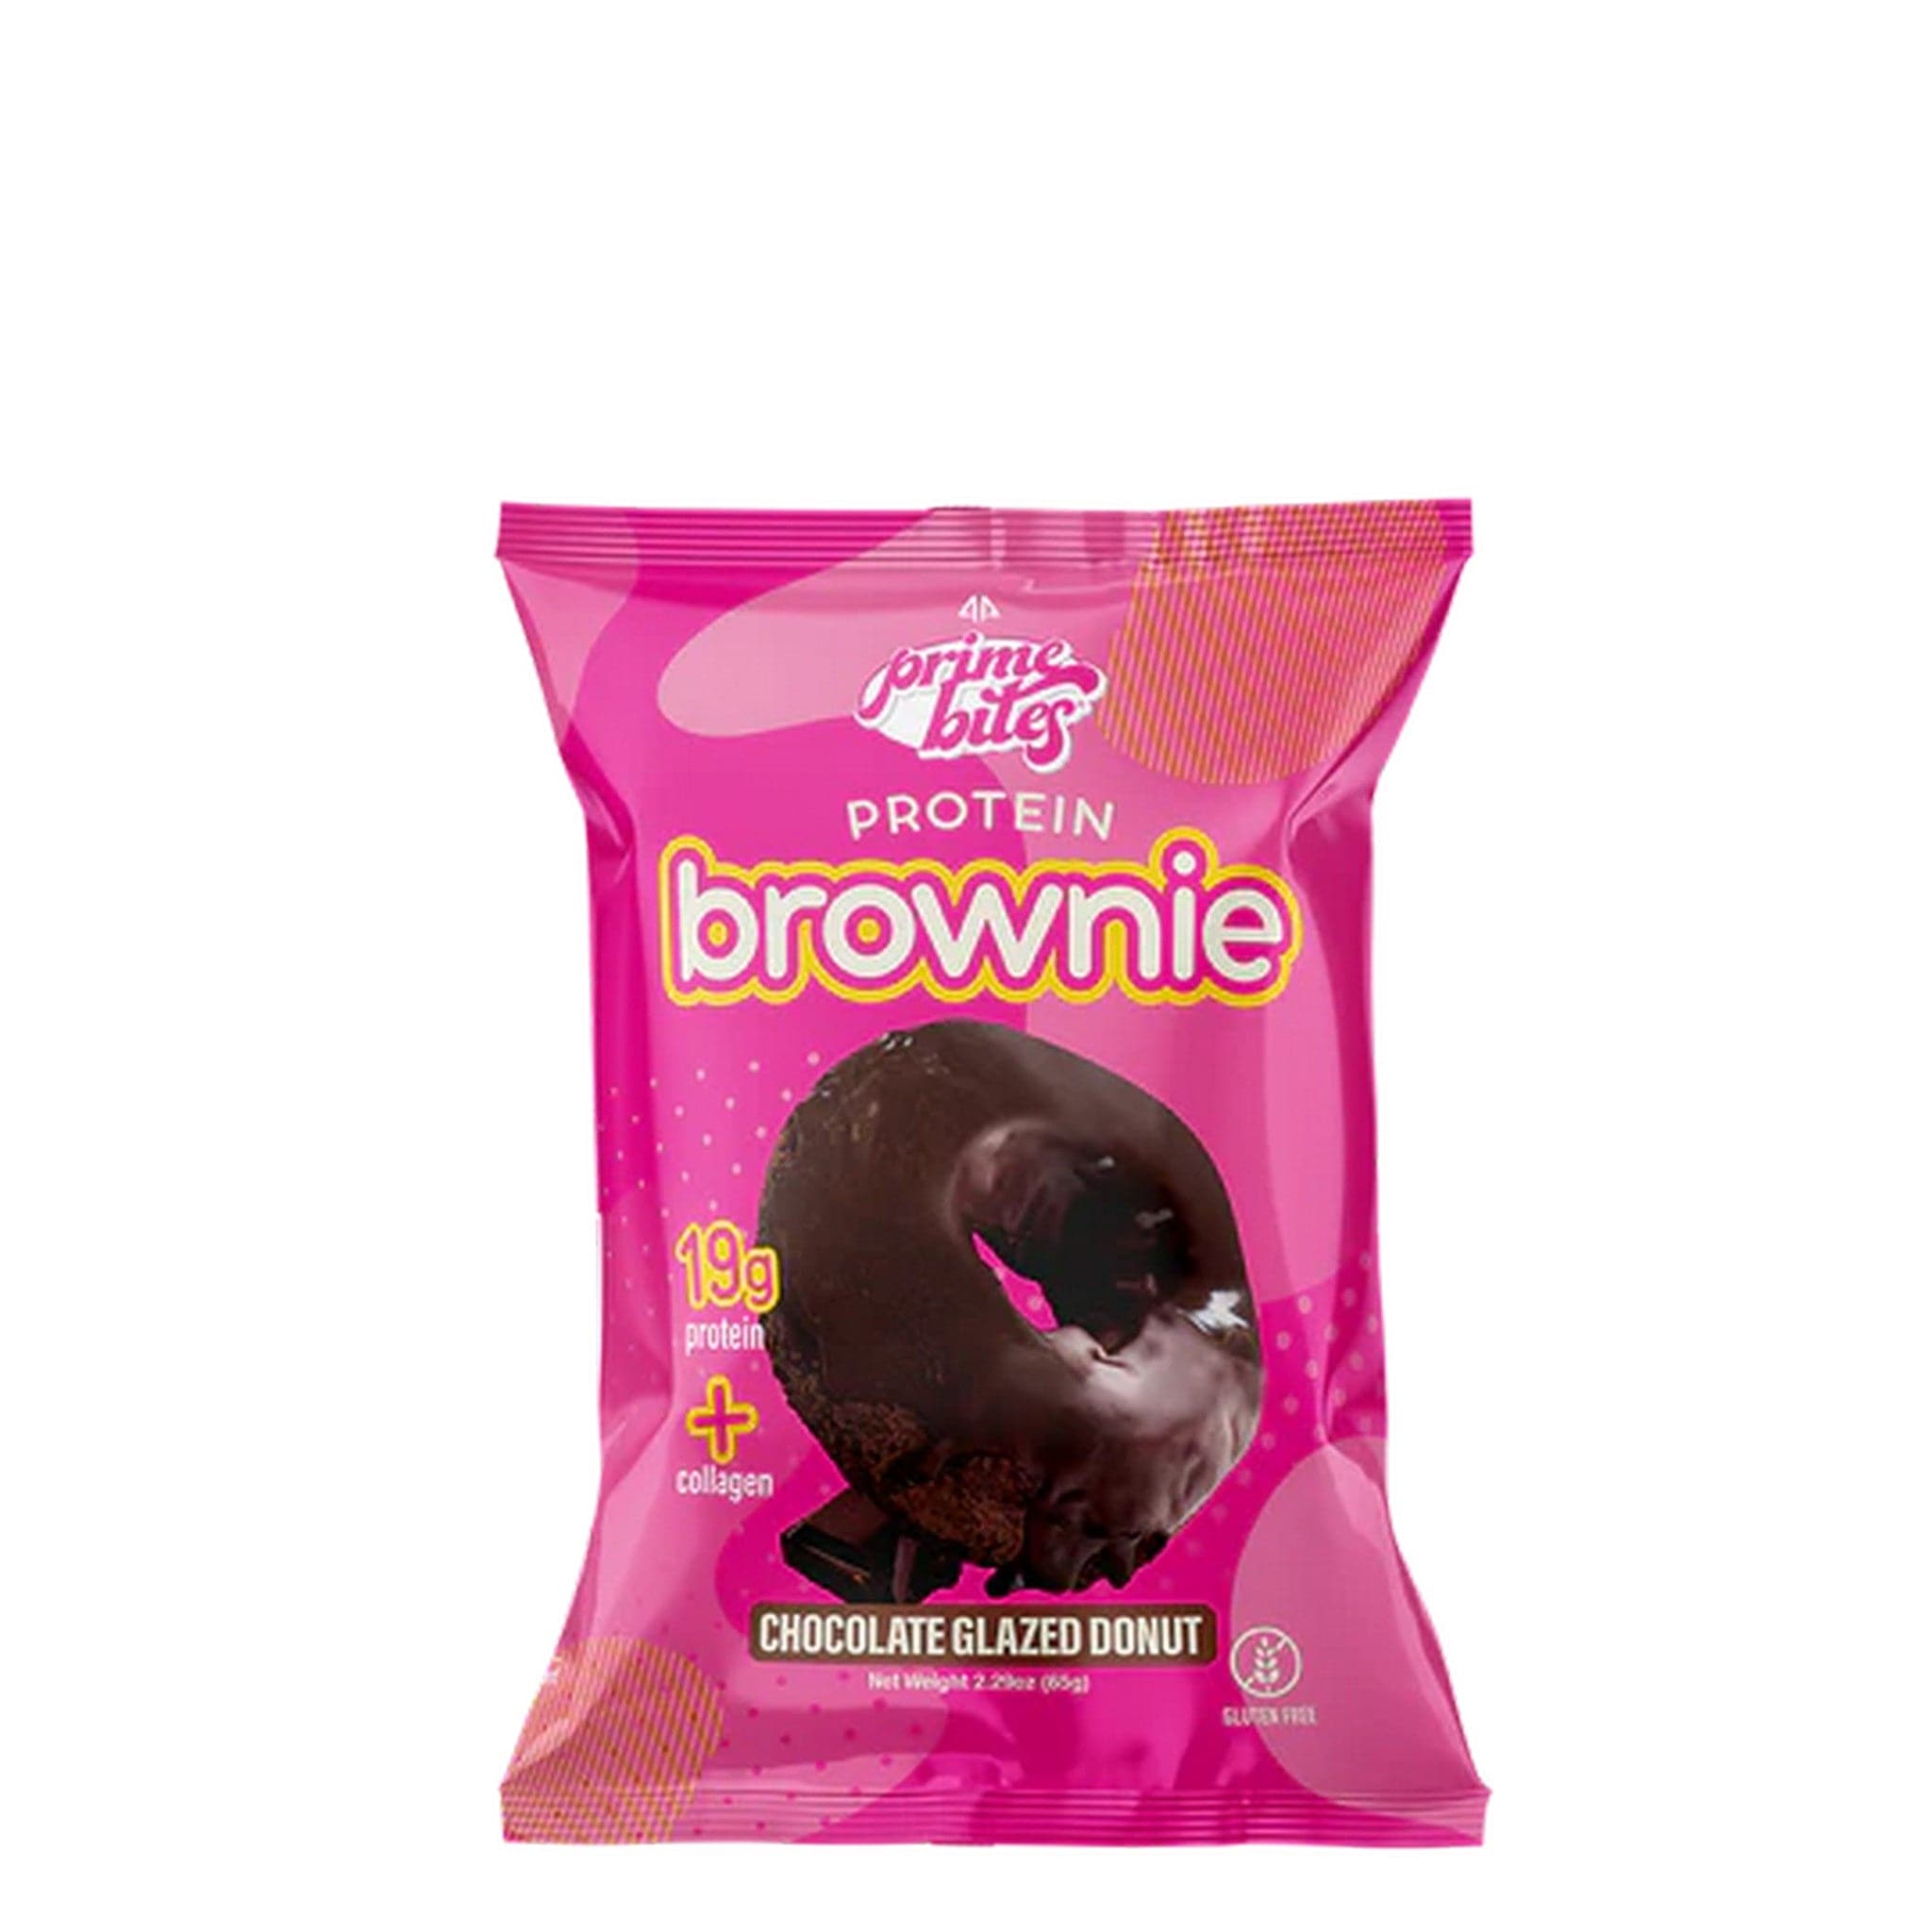 Alpha Prime Prime Bites Protein Brownie single